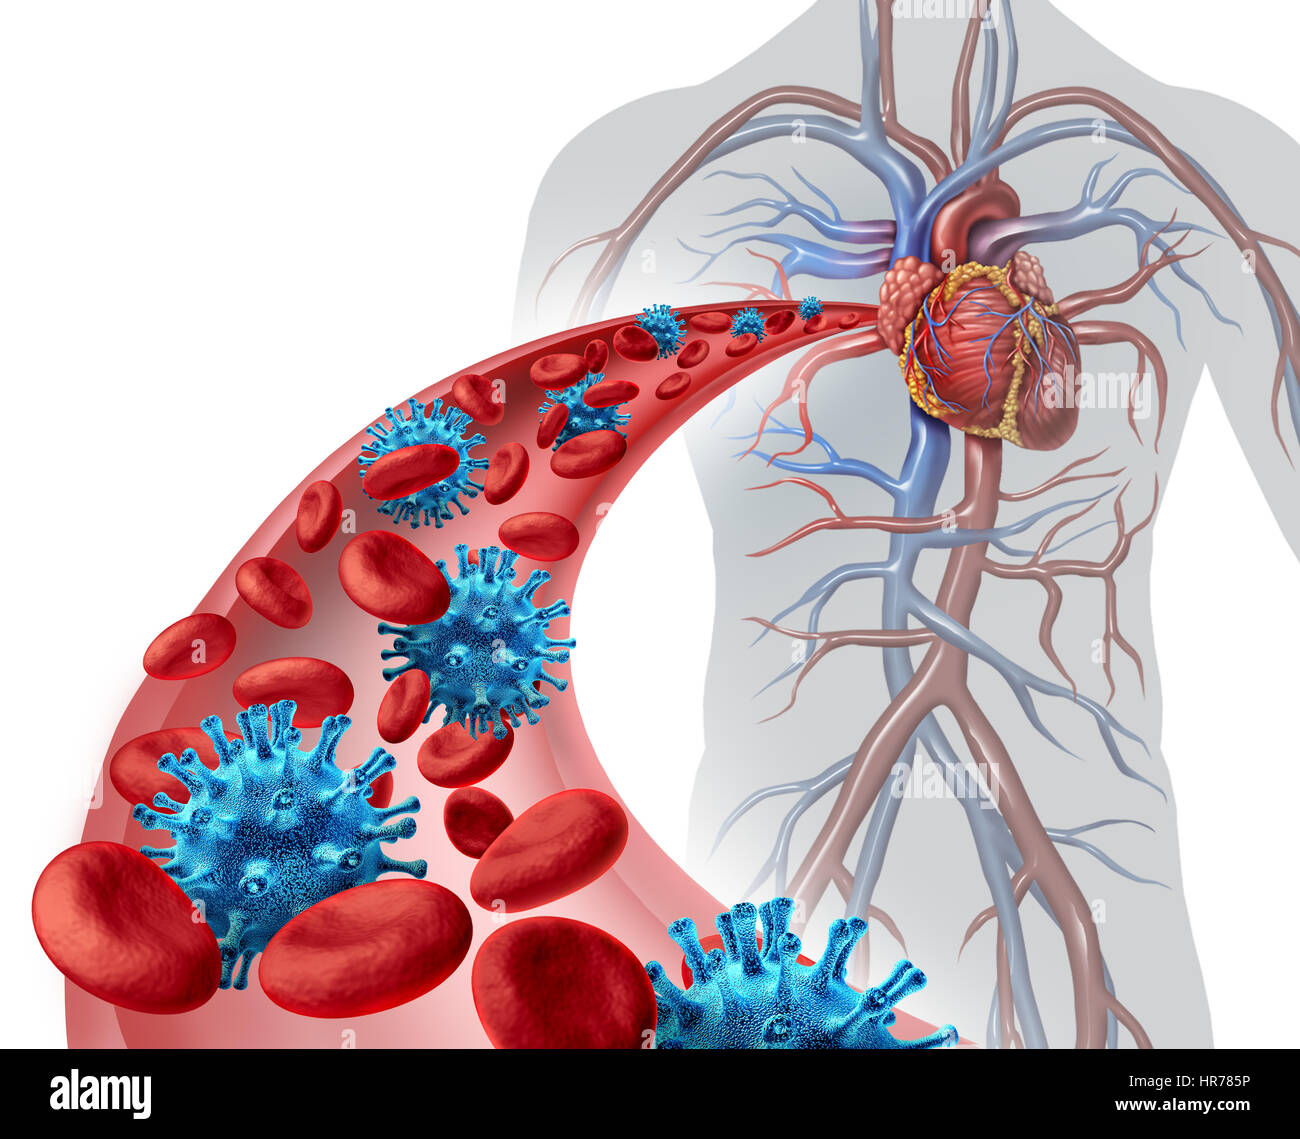 Blut-Virus-Infektion medizinisches Konzept als einen menschlichen Körper mit einer Arterie mit mikroskopisch kleinen Erreger und Erythrozyten von Krankheit bedroht. Stockfoto